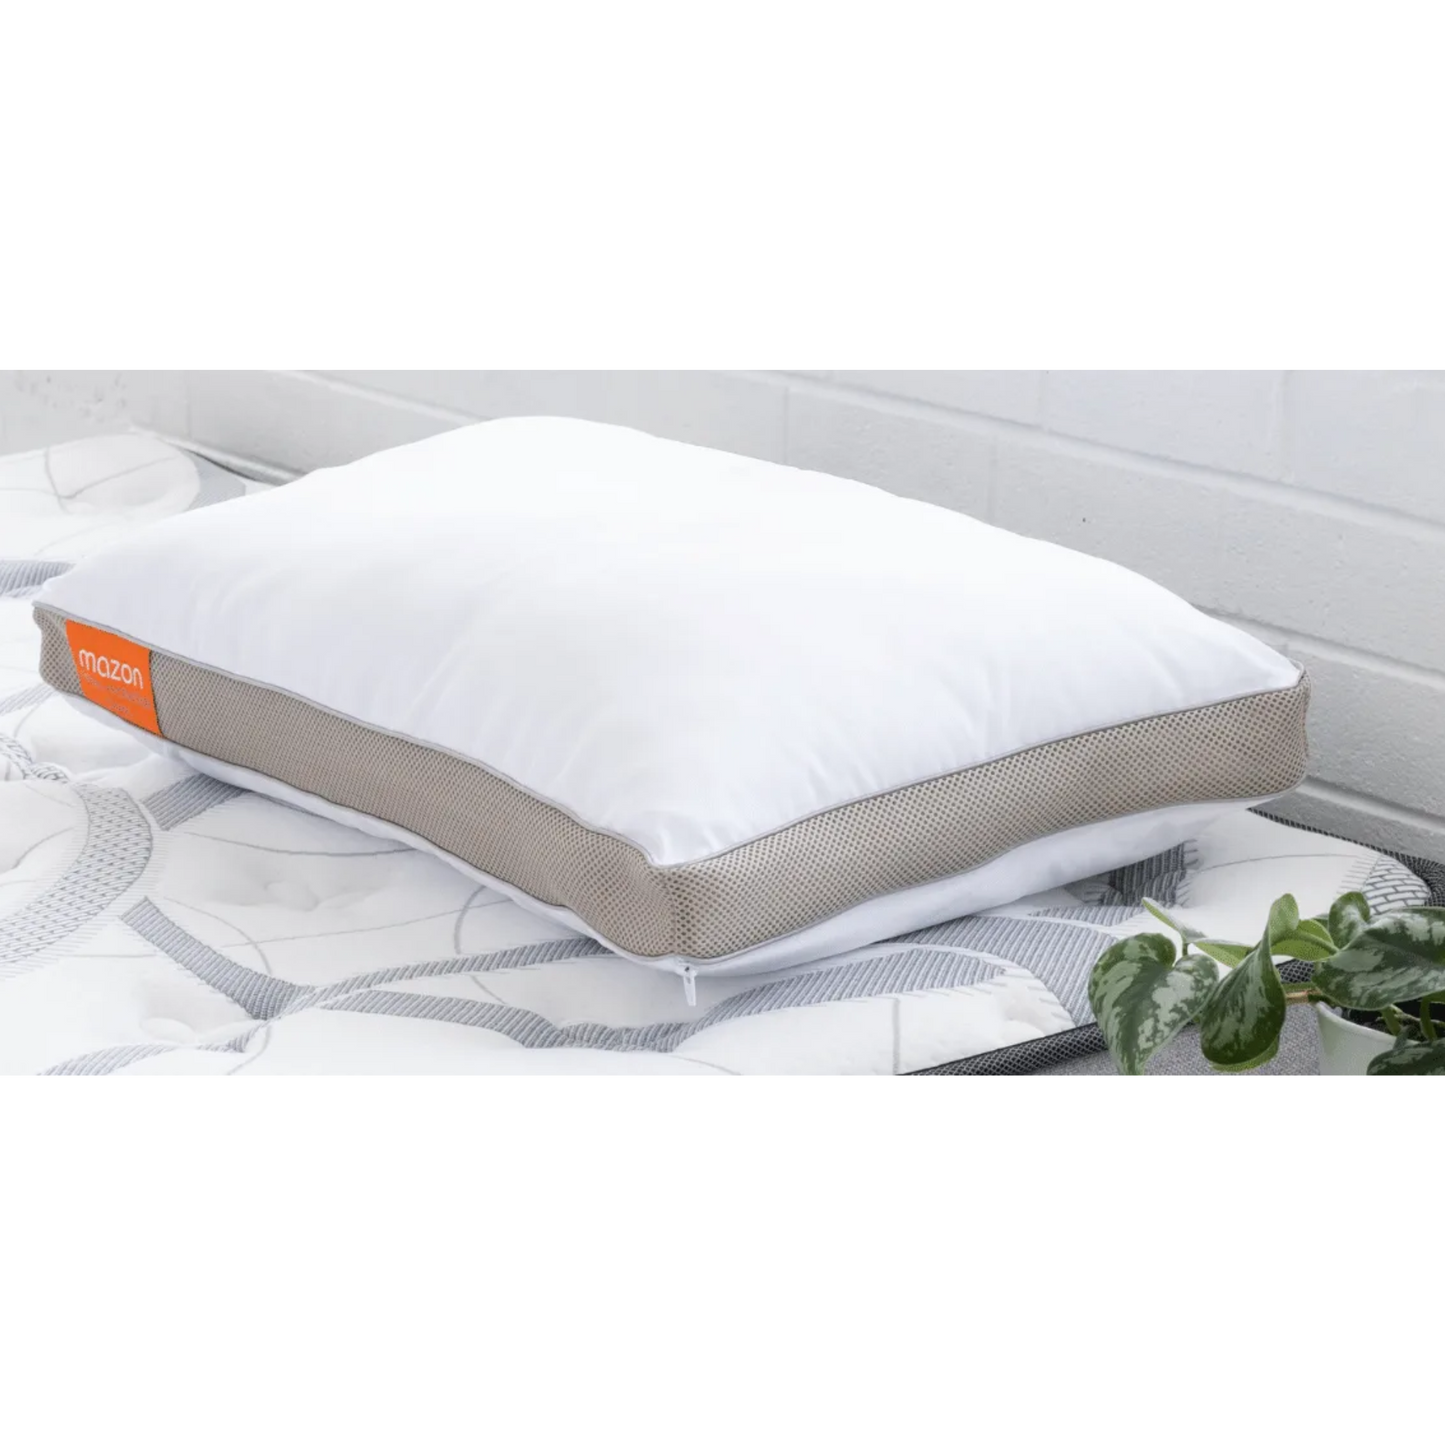 Mazon AirFibre + ActiveDark Classic Pillow